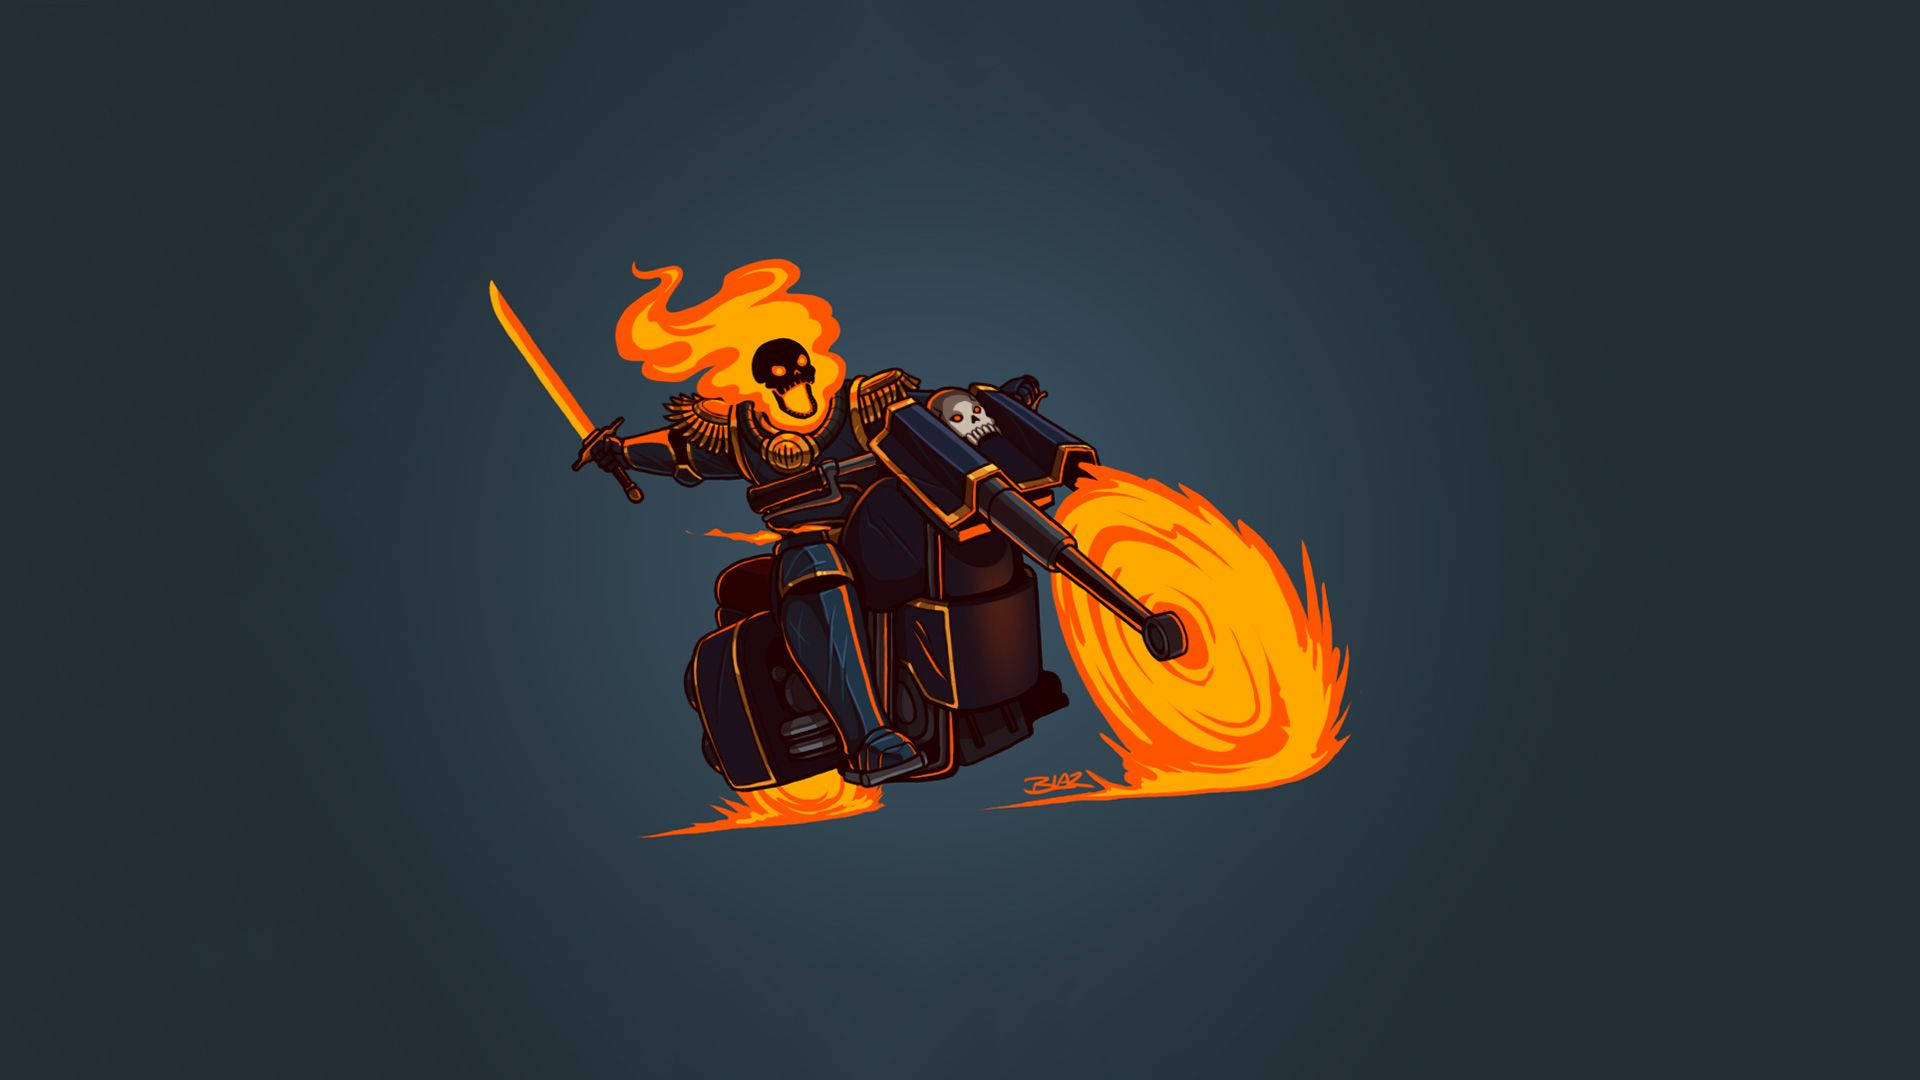 Minimalist Ghost Rider Background